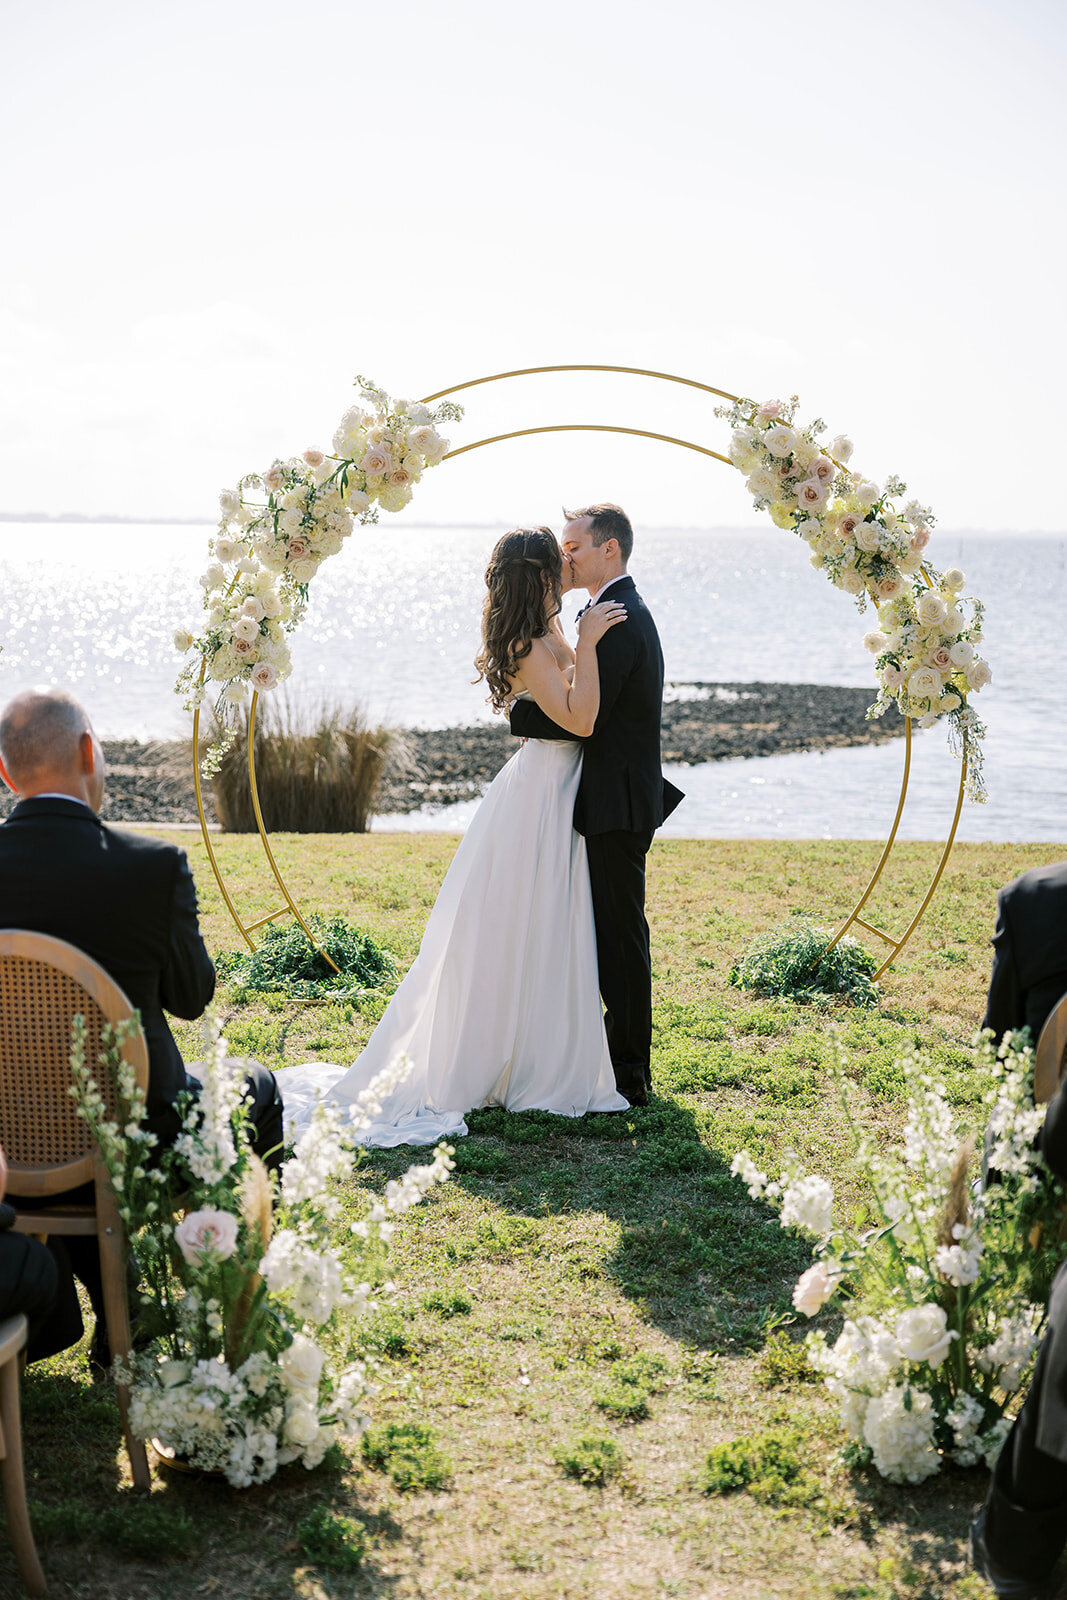 CORNELIA ZAISS PHOTOGRAPHY COURTNEY + ANDREW WEDDING 0910_websize